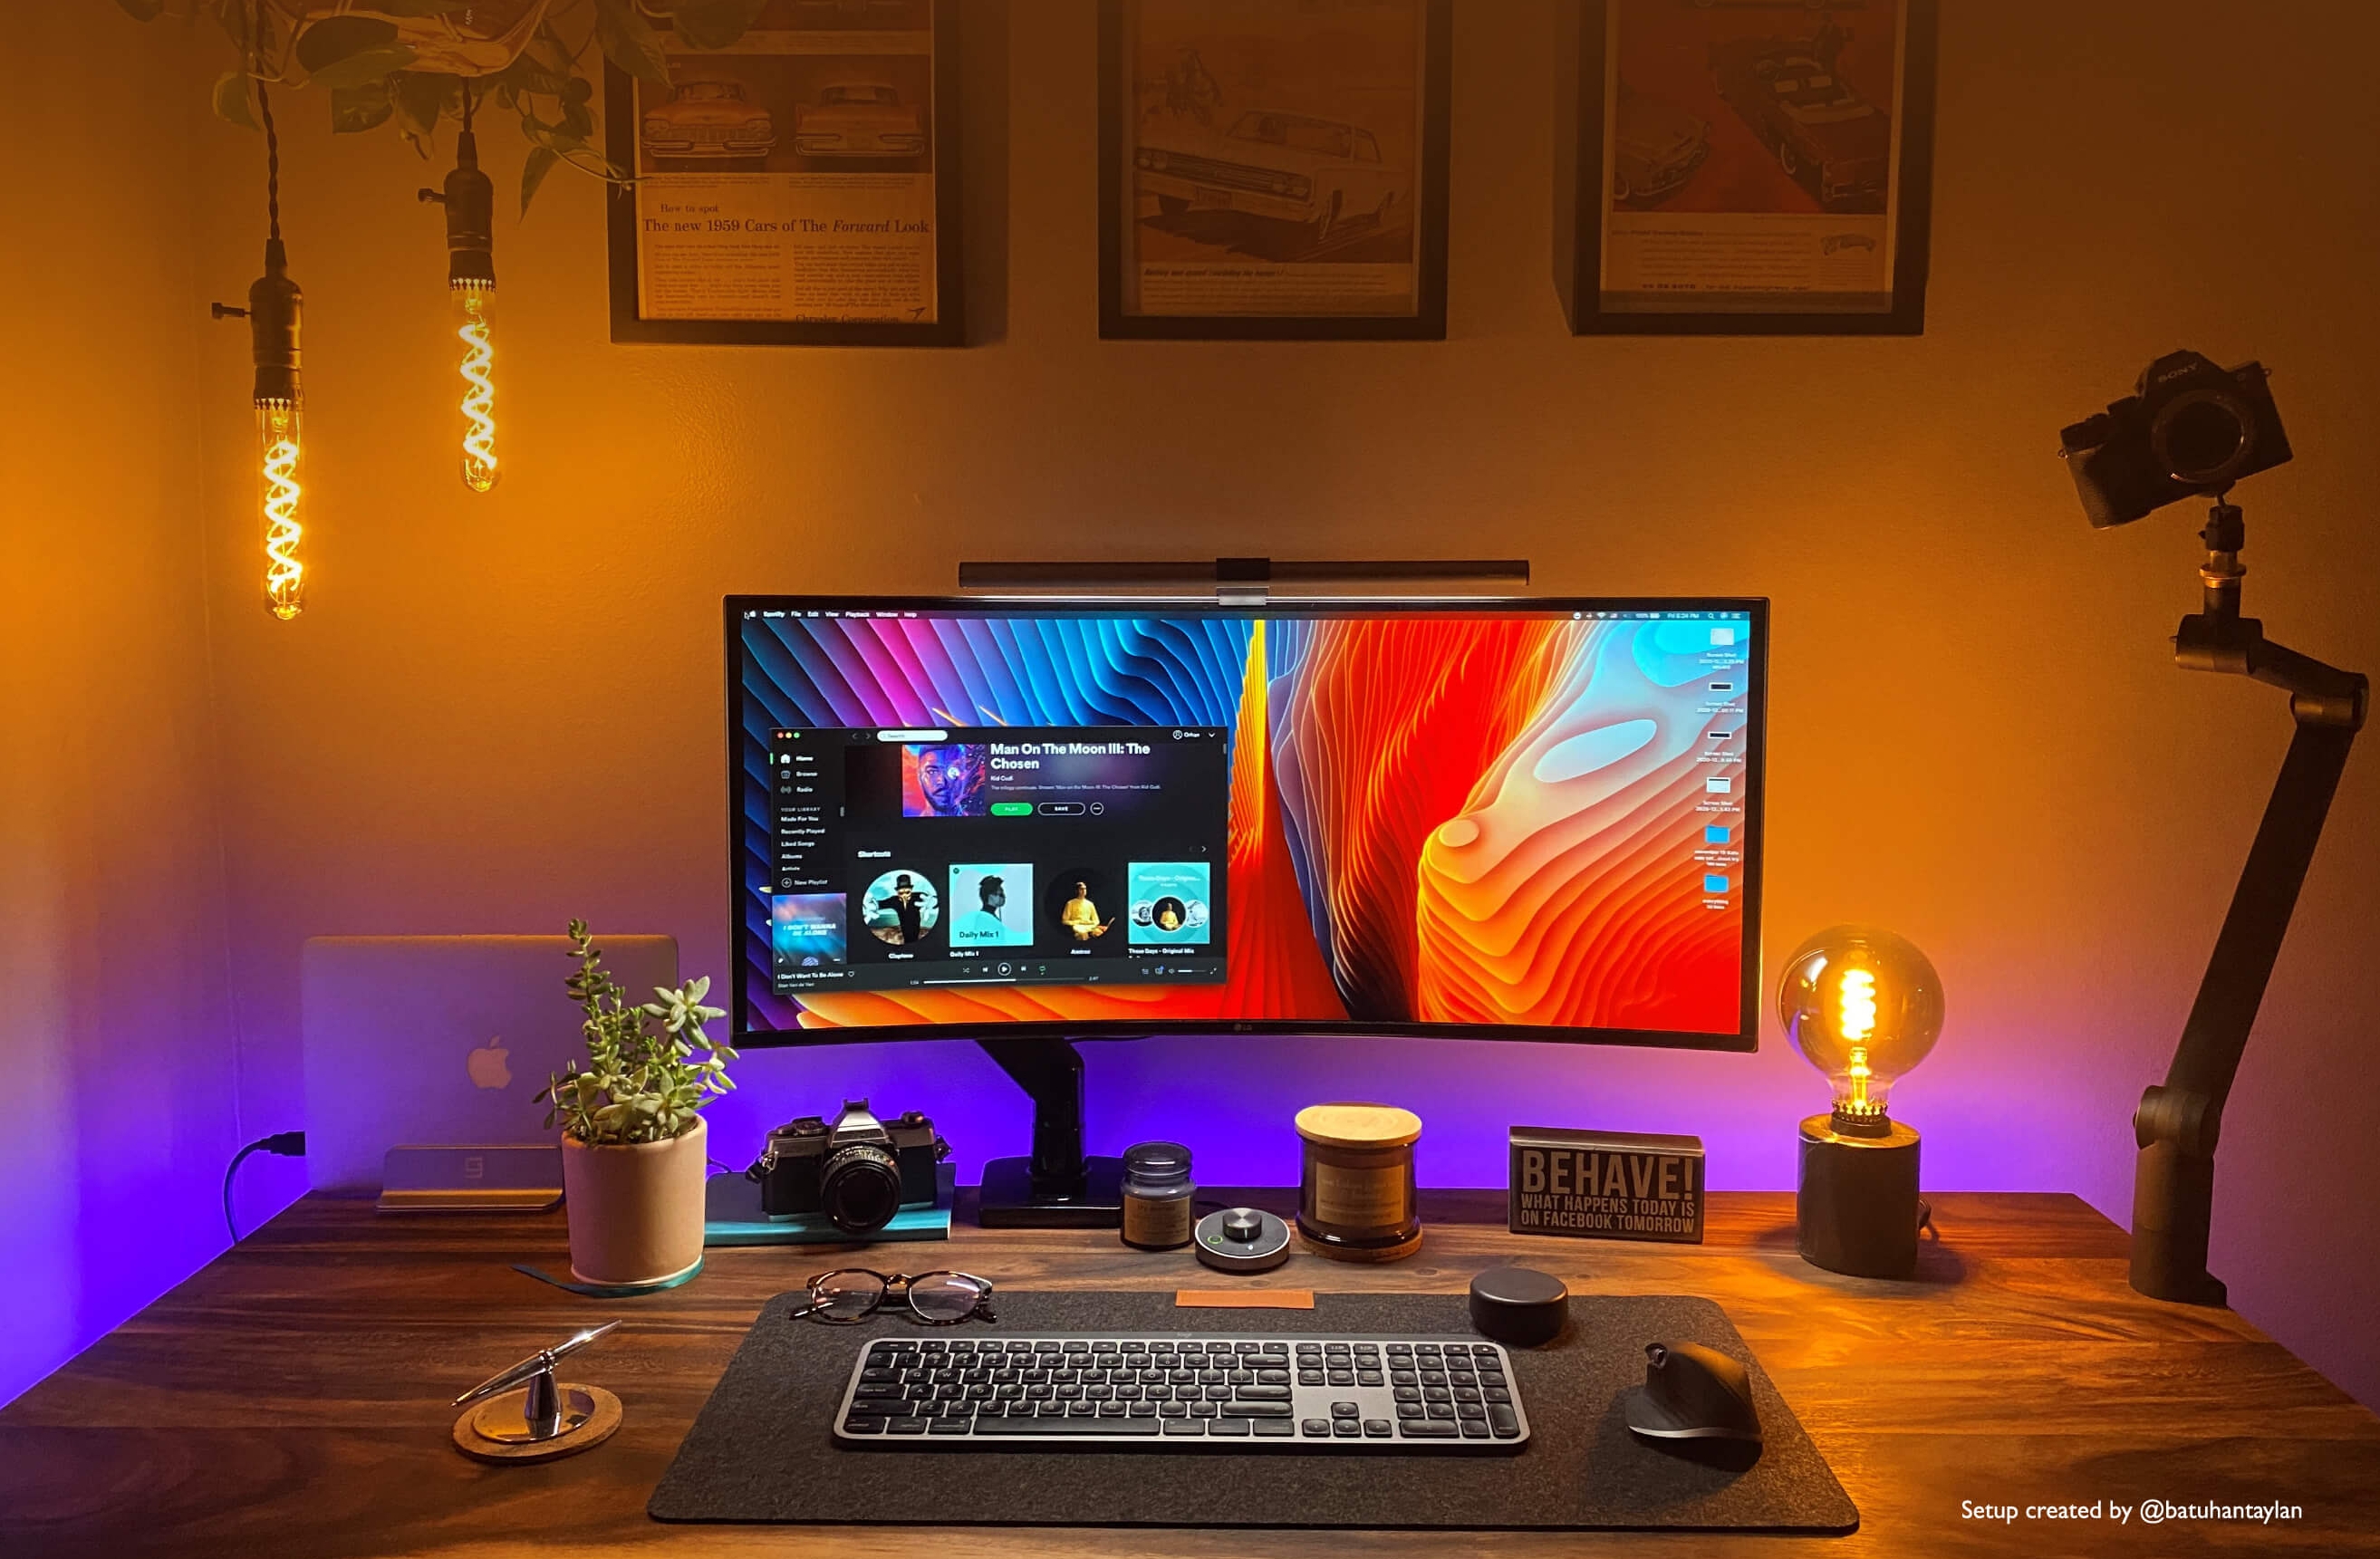 Best Lamp For Your Desk Setup Benq Us, Lamp For Computer Desk